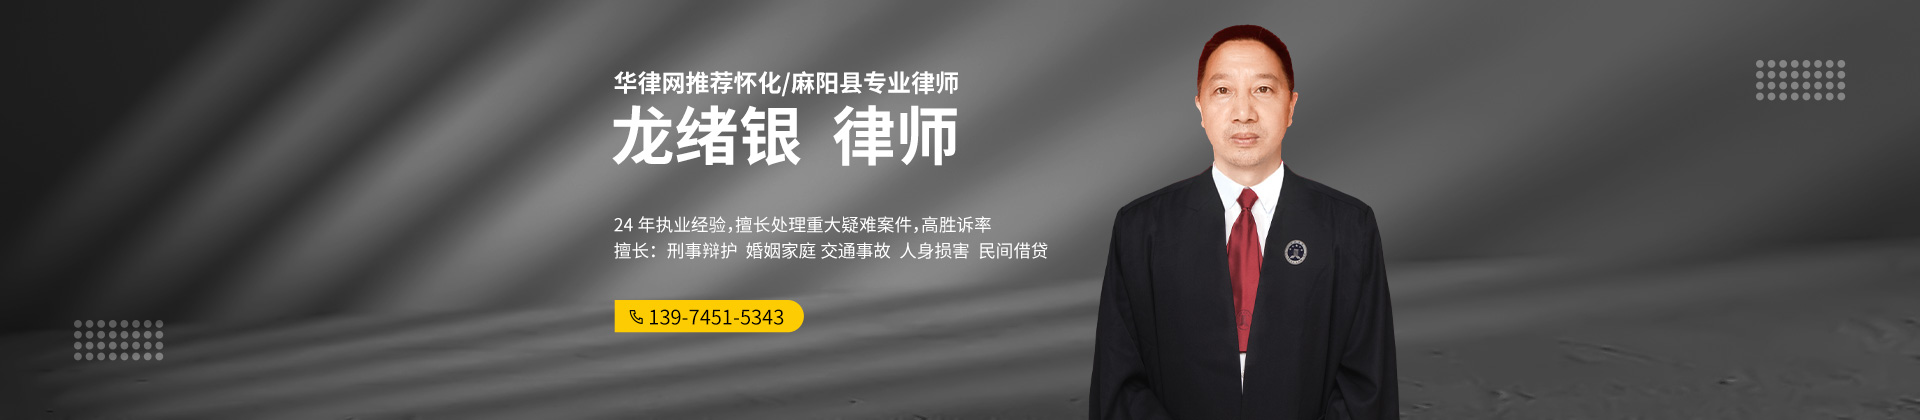 麻阳苗族自治县期货交易在线律师-龙绪银律师